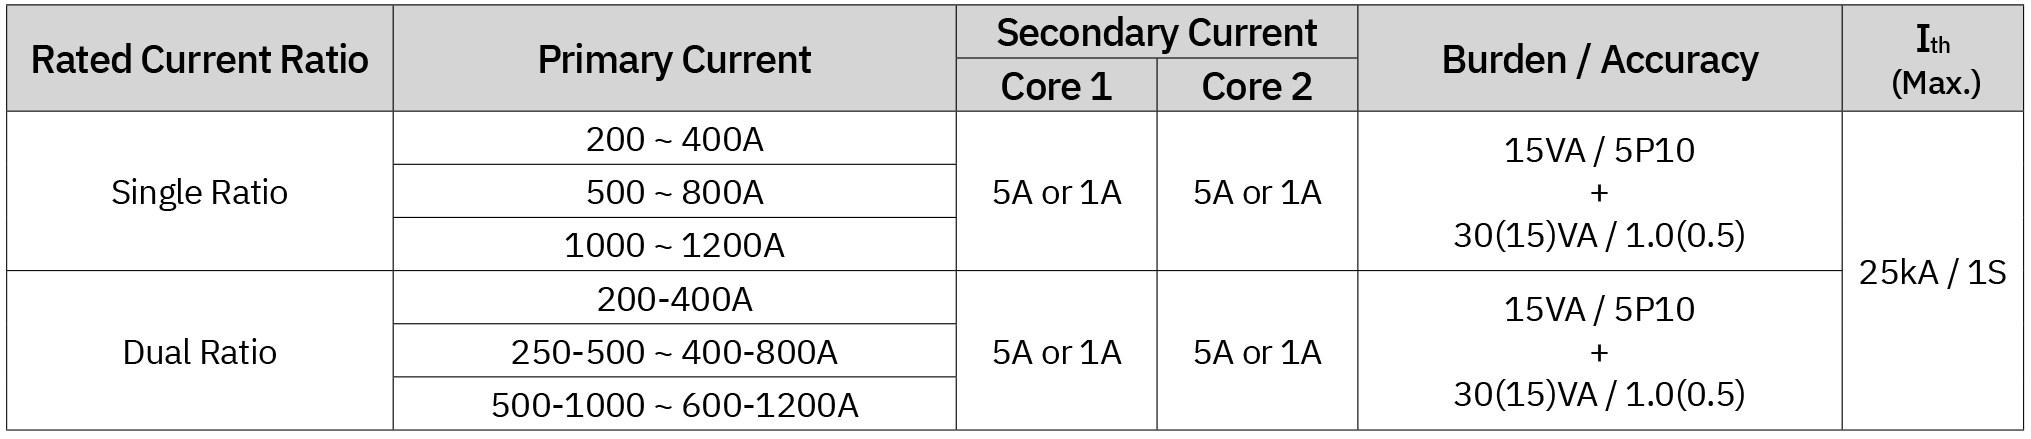 3.6kVツーコアエポキシキャスト電流トランス（ER-3C）の仕様表